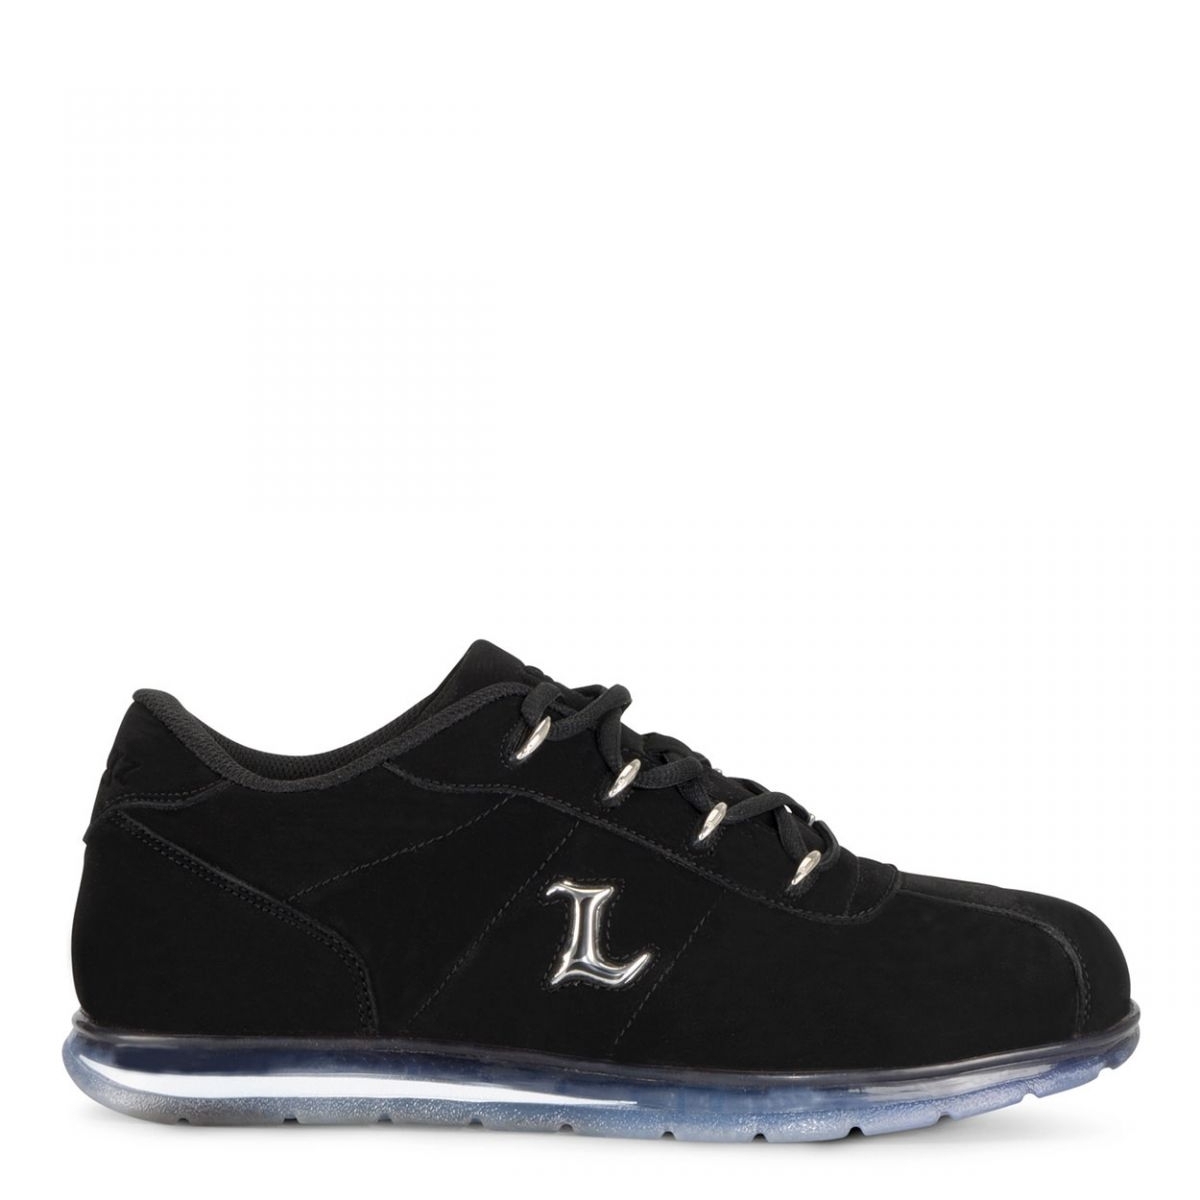 Lugz Men's Zrocs DX Sneaker Black/Clear - MZRCID-0048 BLACK/CLEAR - BLACK/CLEAR, 11.5